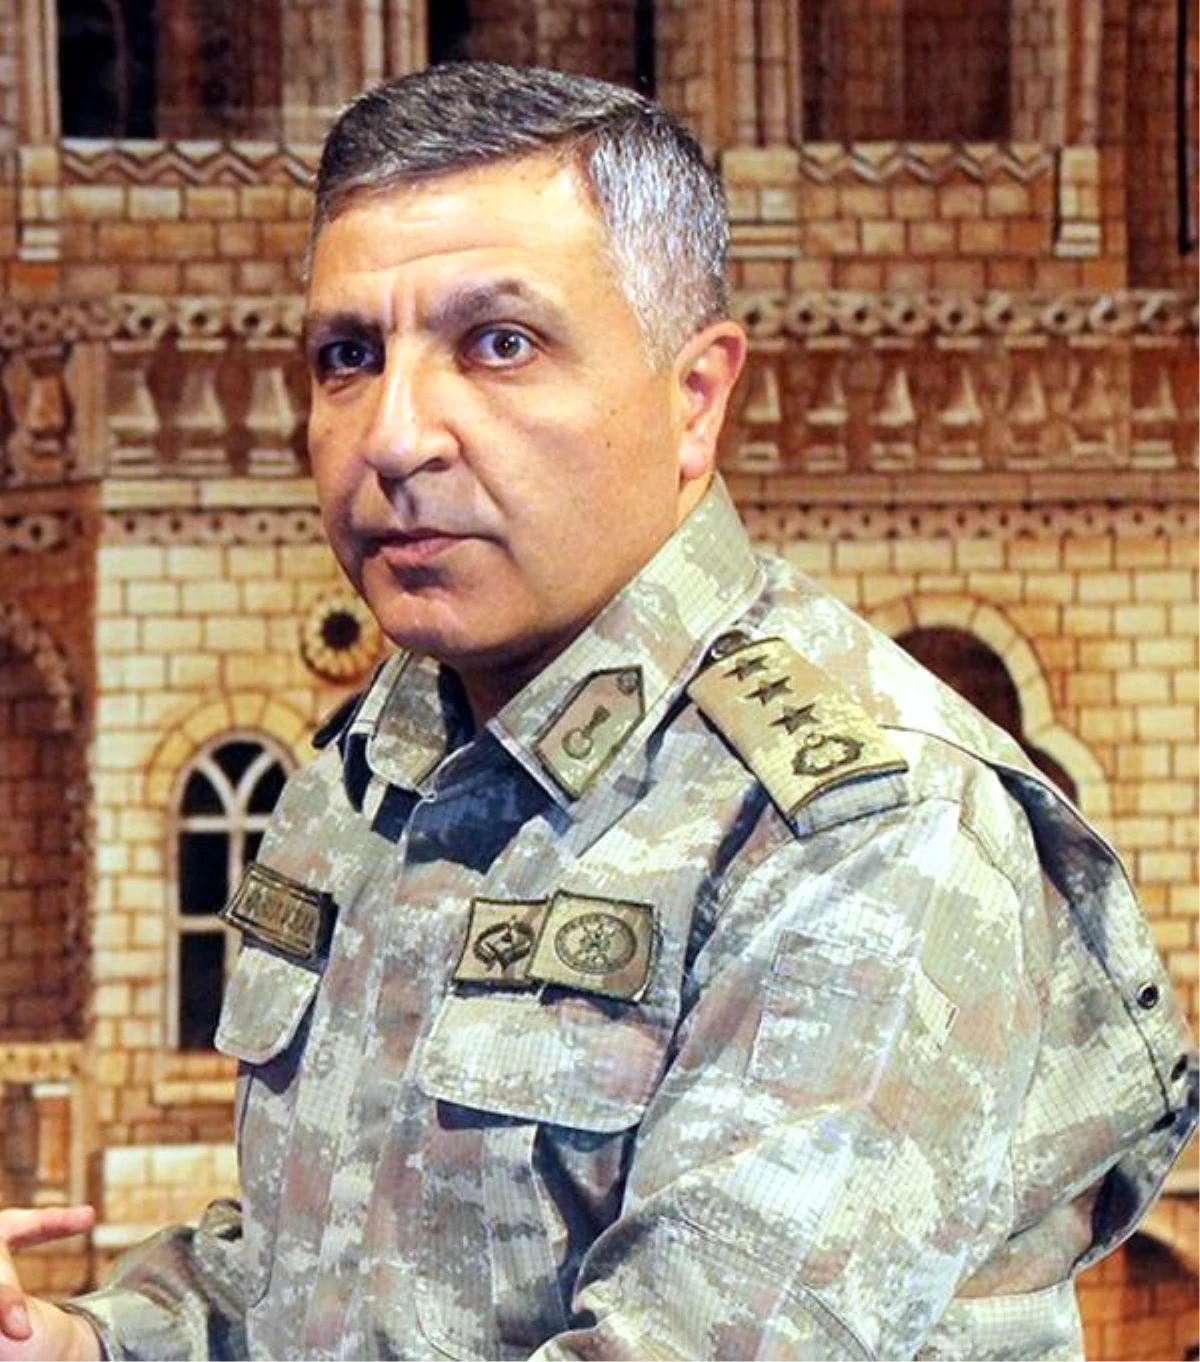 Mardin Jandarma Komutanı ile 2 Subay Tutuklandı